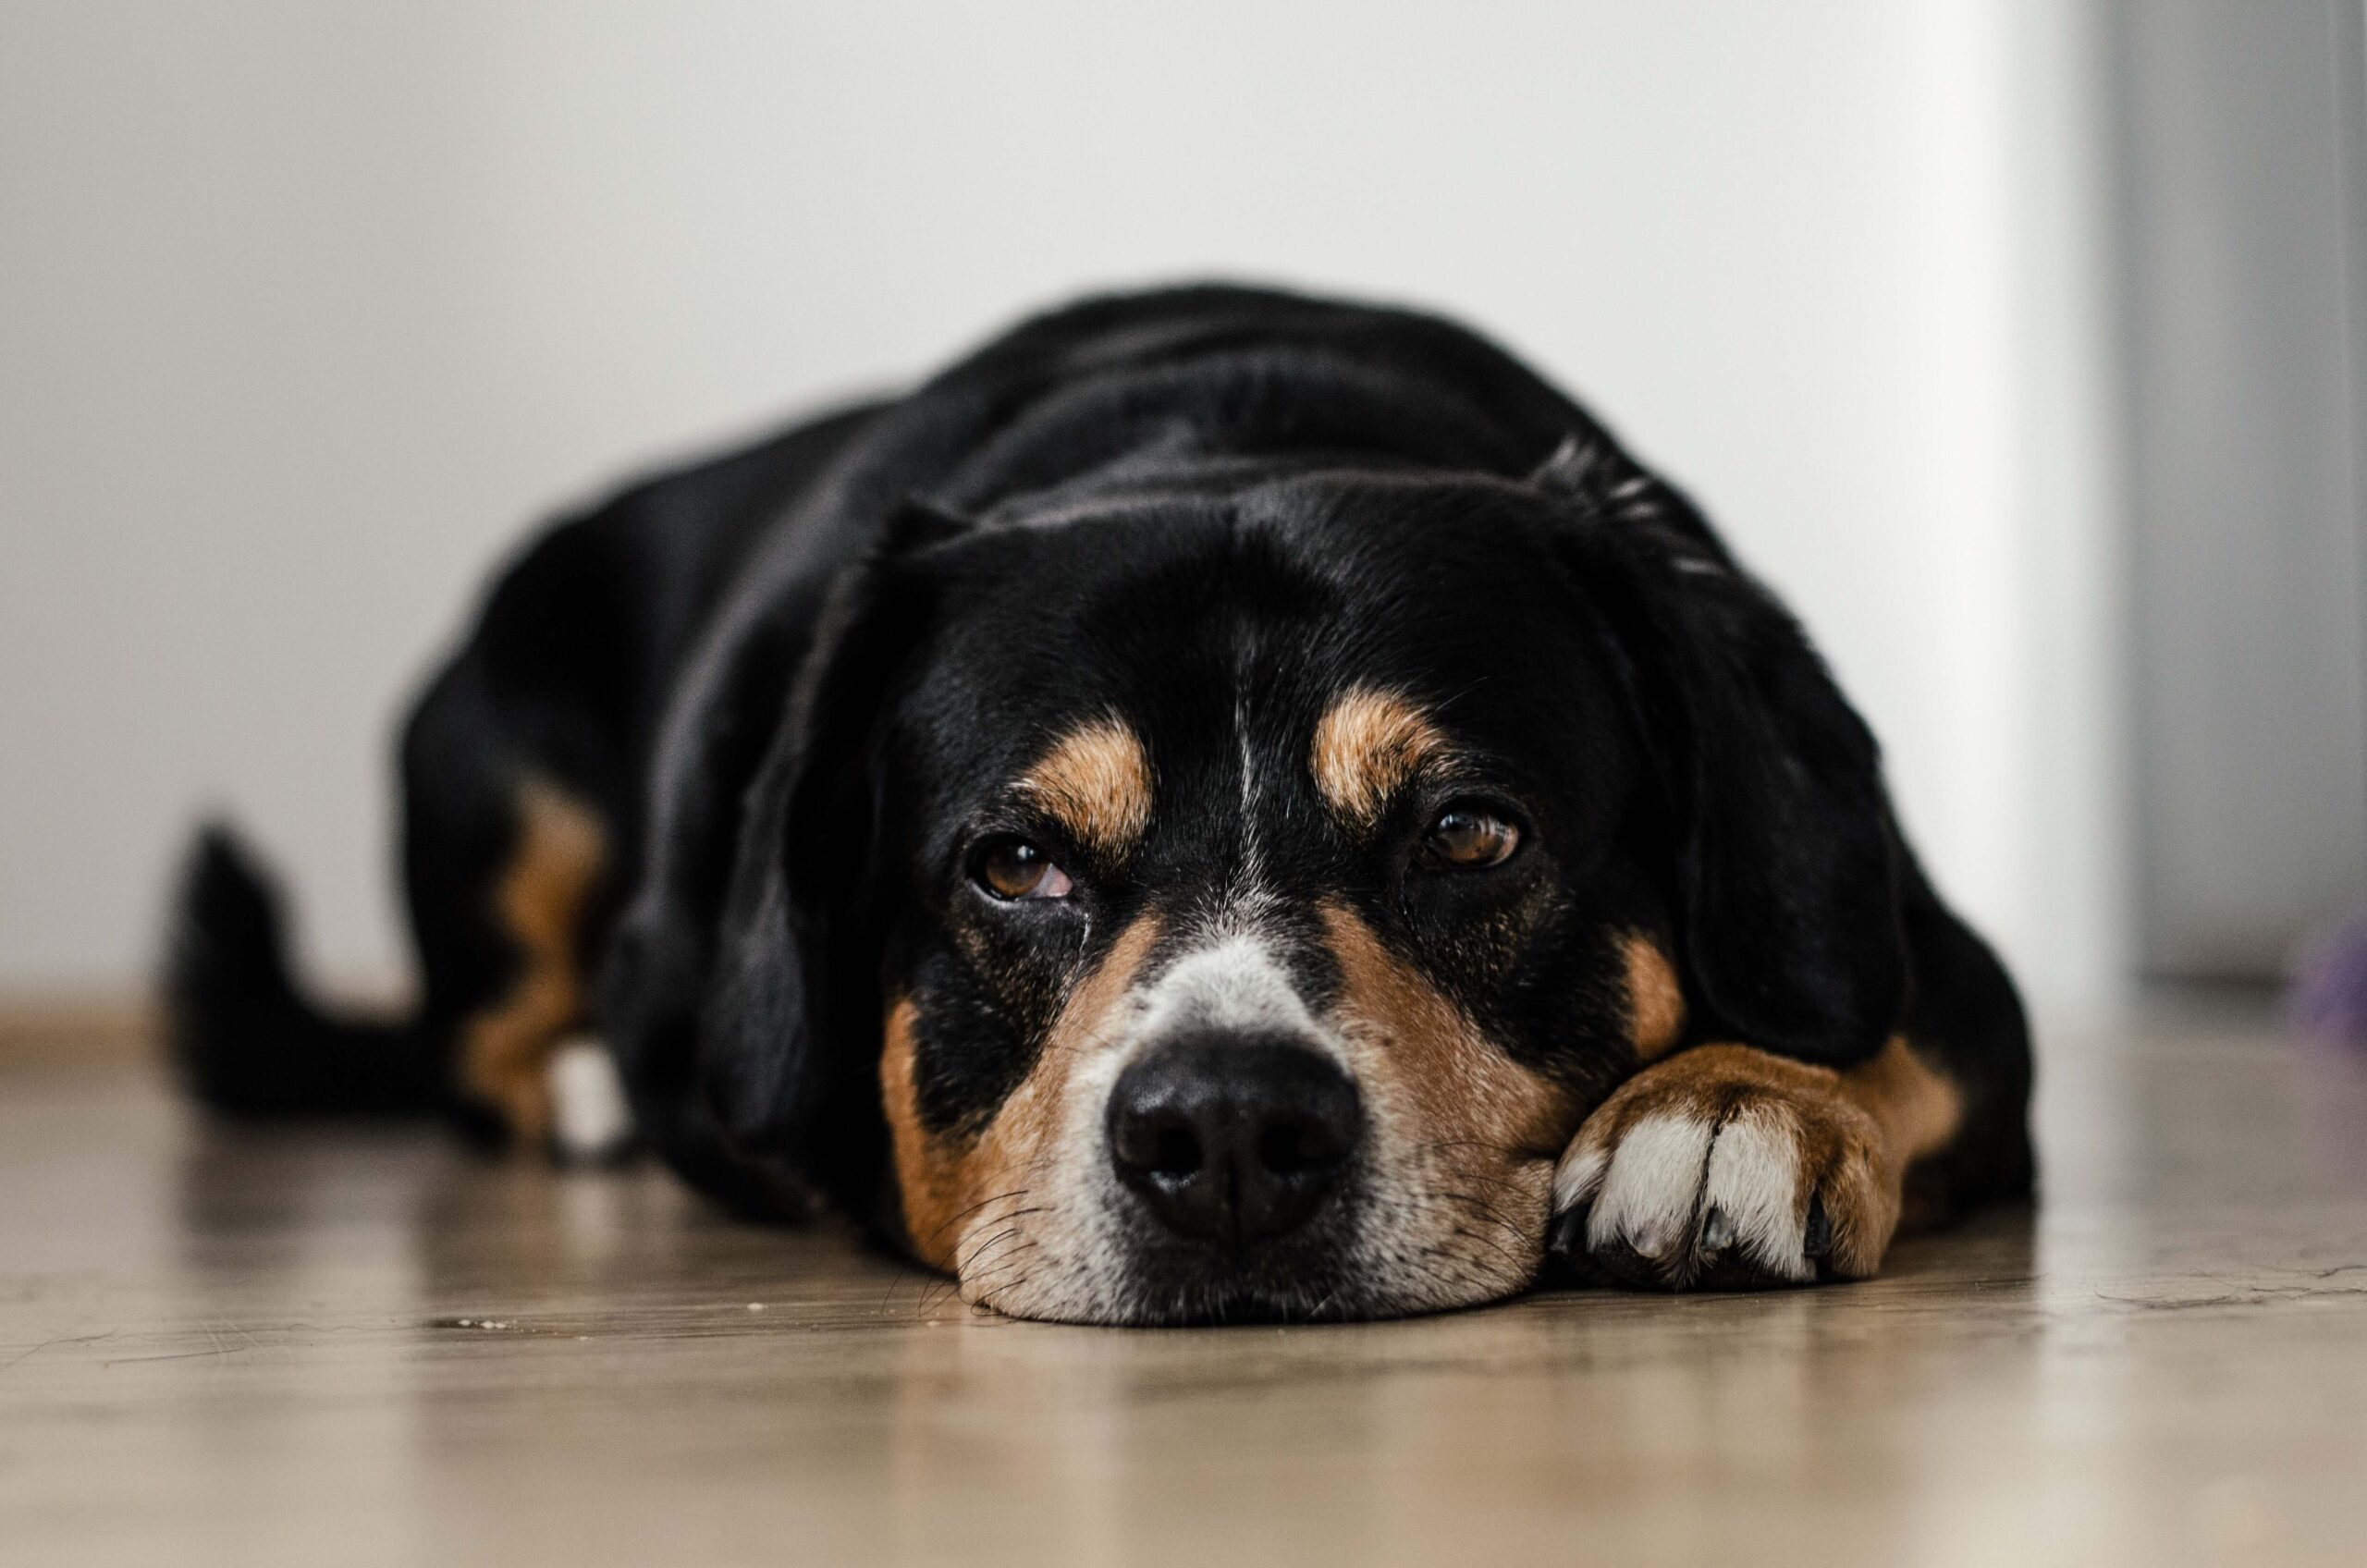 A dog looking sad lying on the floor